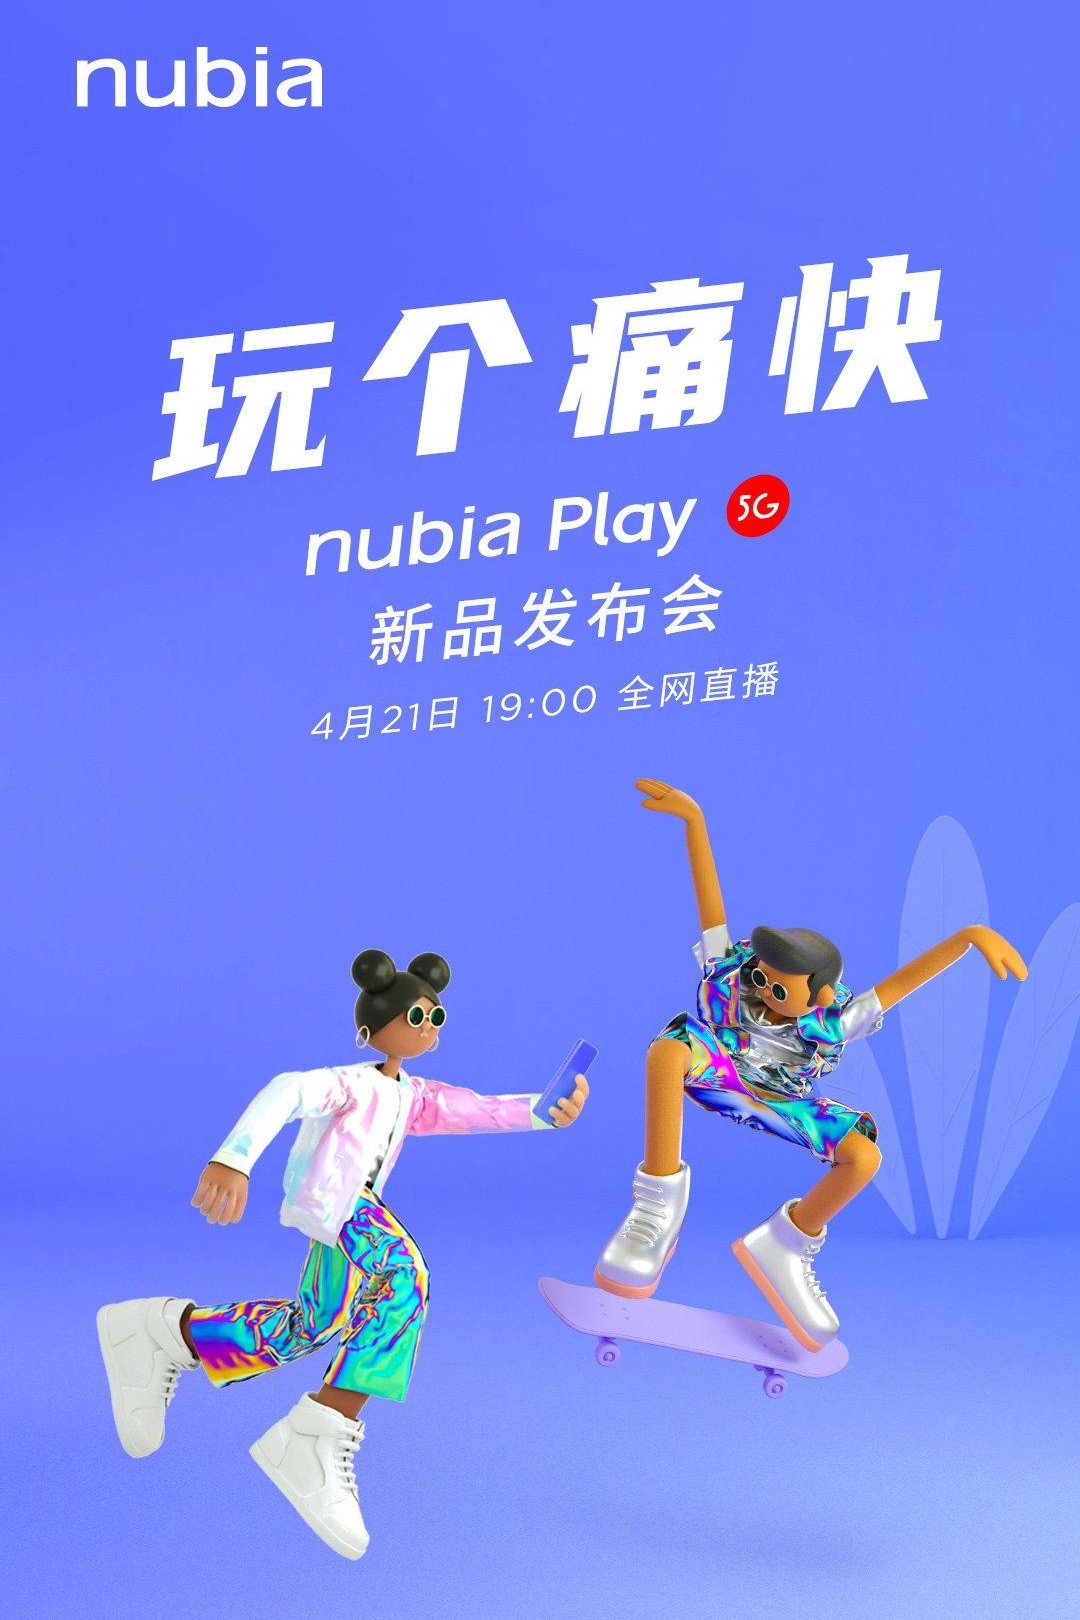 Nubia Play 5G. Что-то новенькое.